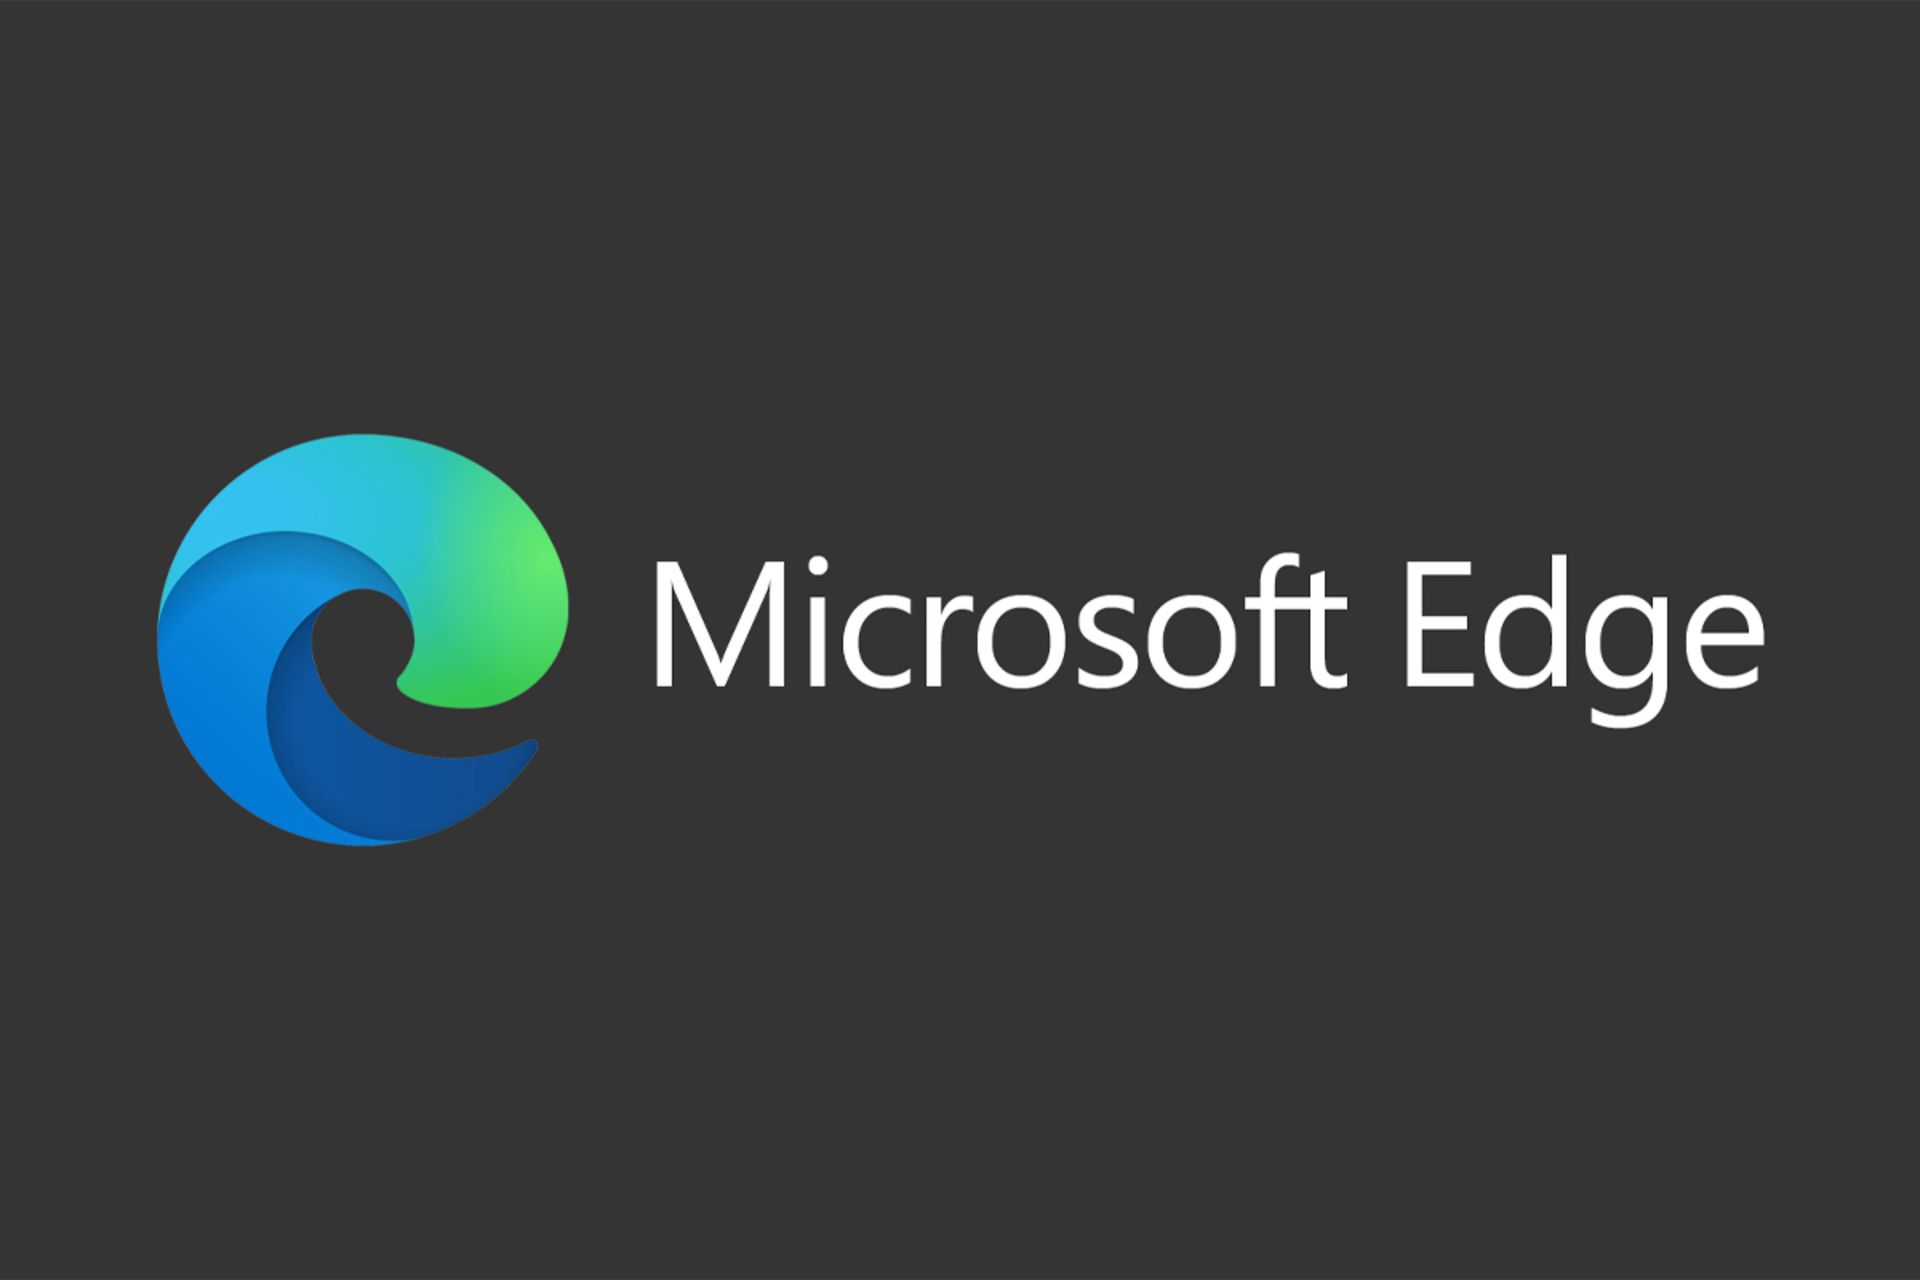 مرجع متخصصين ايران لوگو رنگي مايكروسافت اج / Microsoft Edge در پس زمينه خاكستري